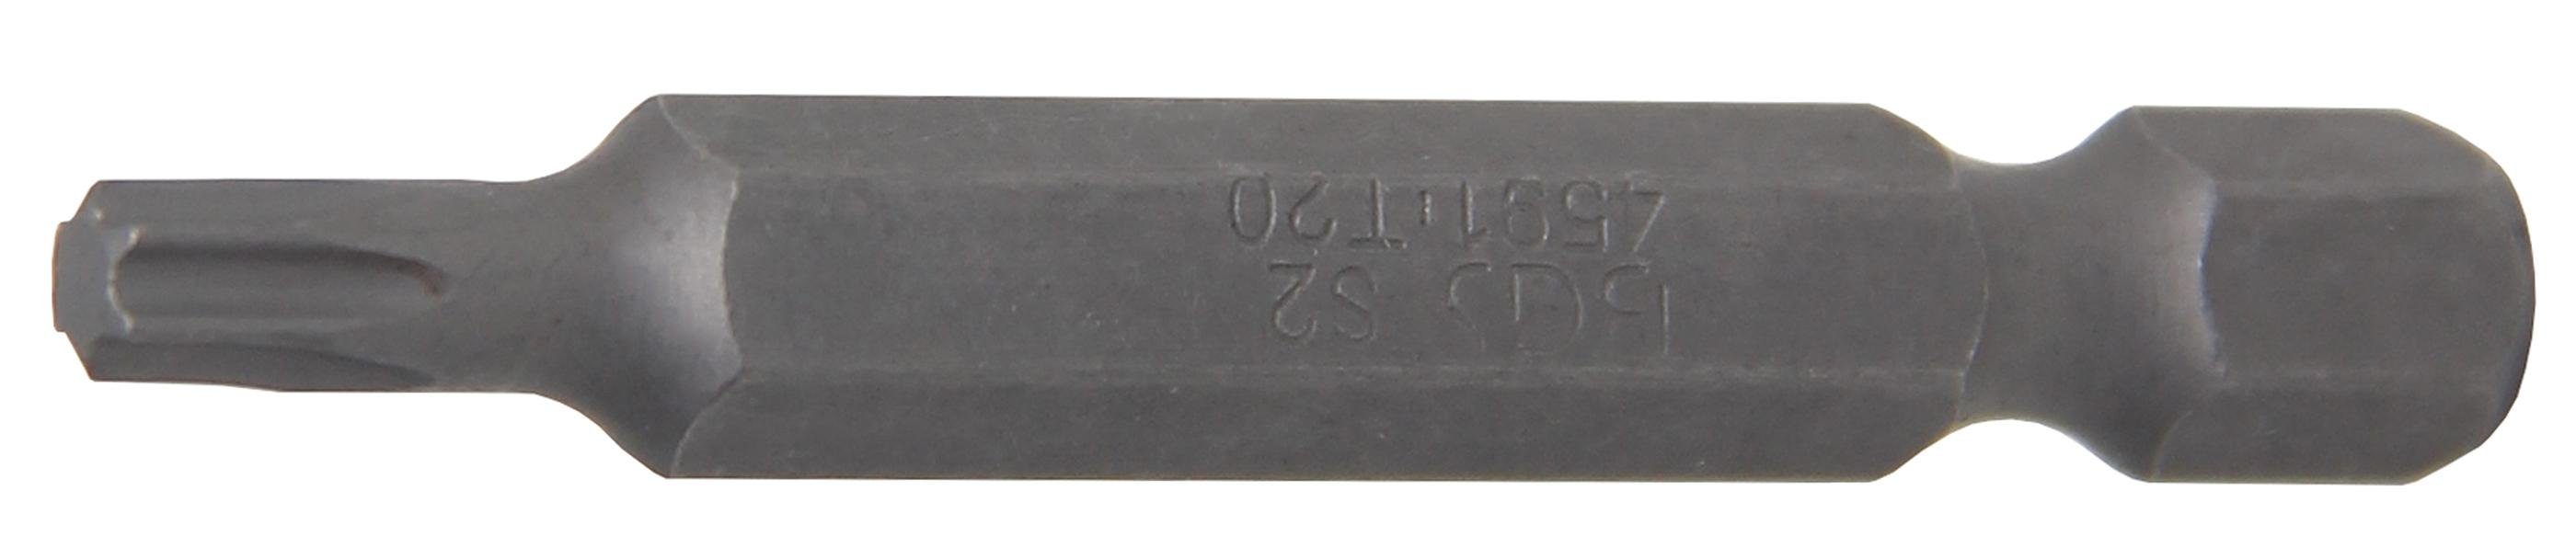 (für Torx) T20 Antrieb T-Profil Bit-Schraubendreher mm 6,3 Bit, (1/4), Außensechskant technic mm, BGS 50 Länge